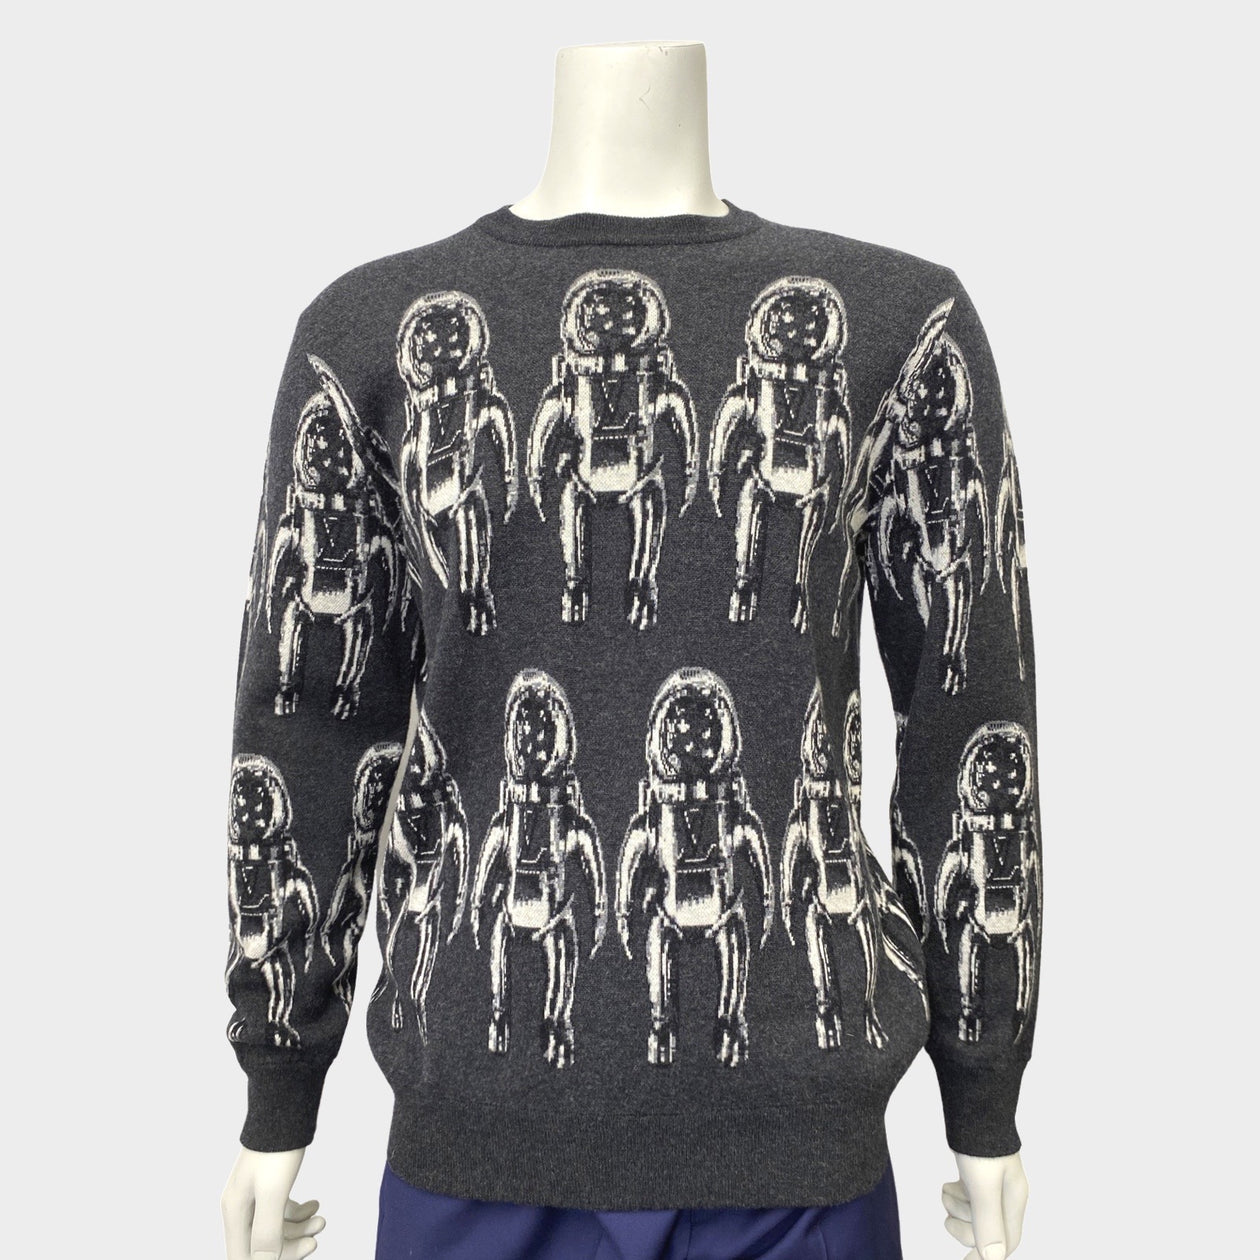 Louis Vuitton Astronaut T shirt